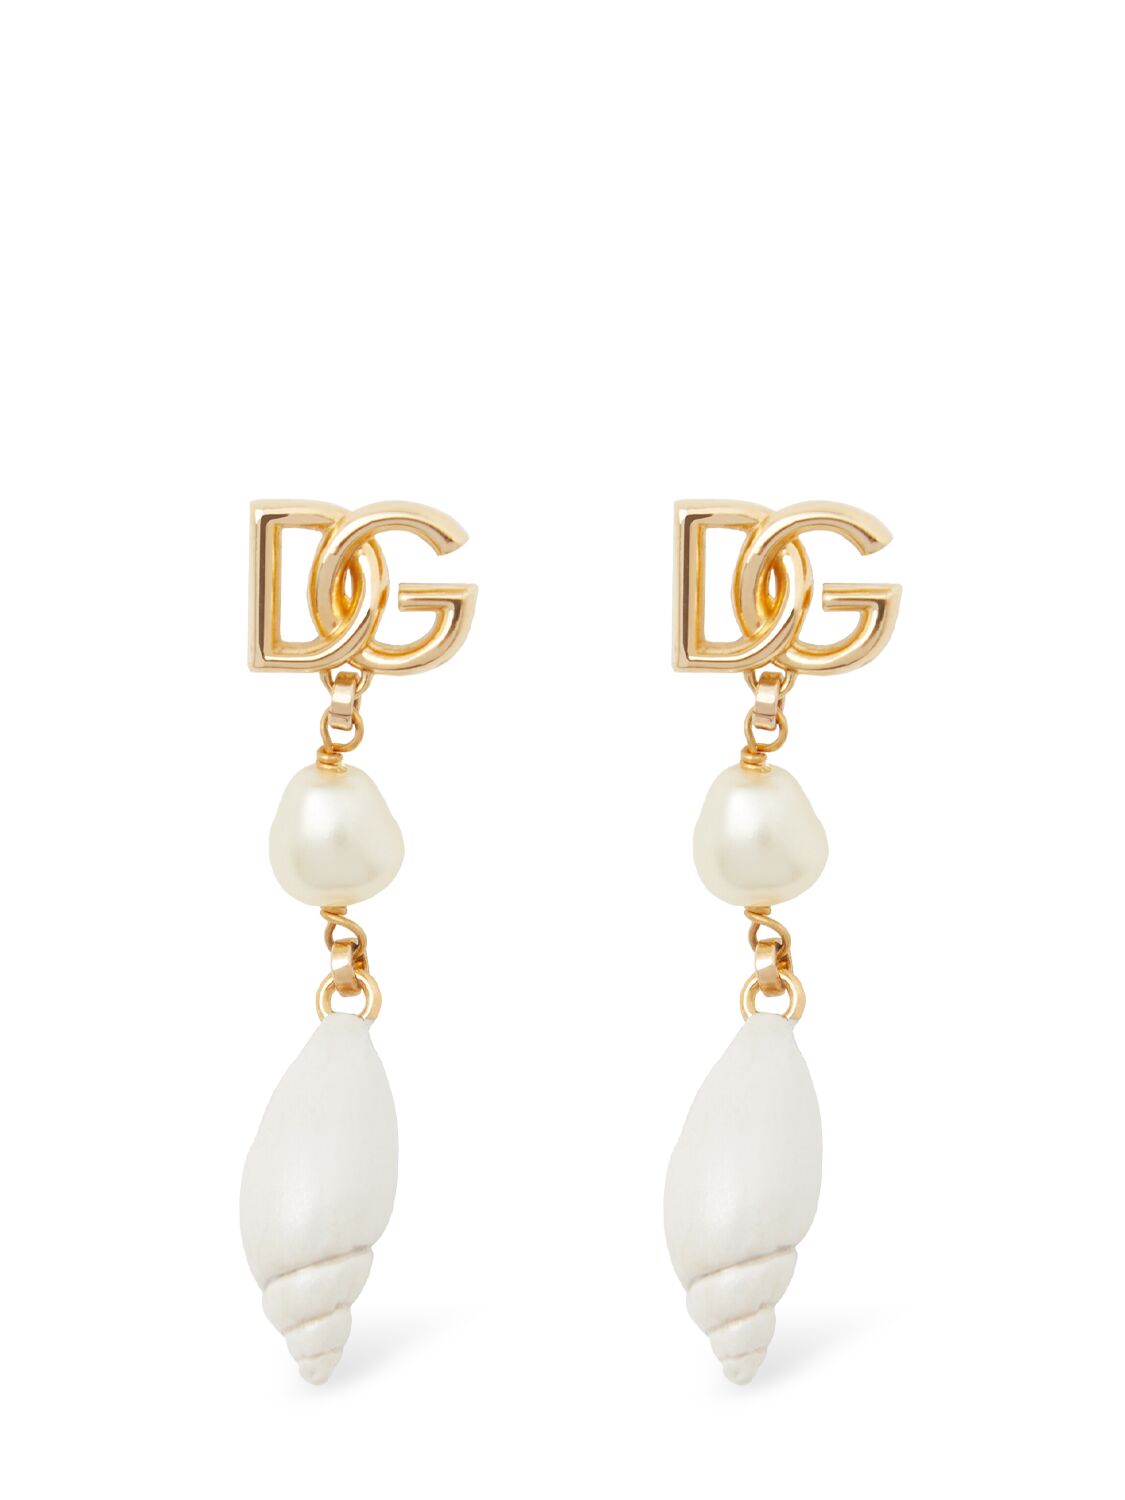 Dolce & Gabbana Dg Logo & Shell Charm Earrings In White